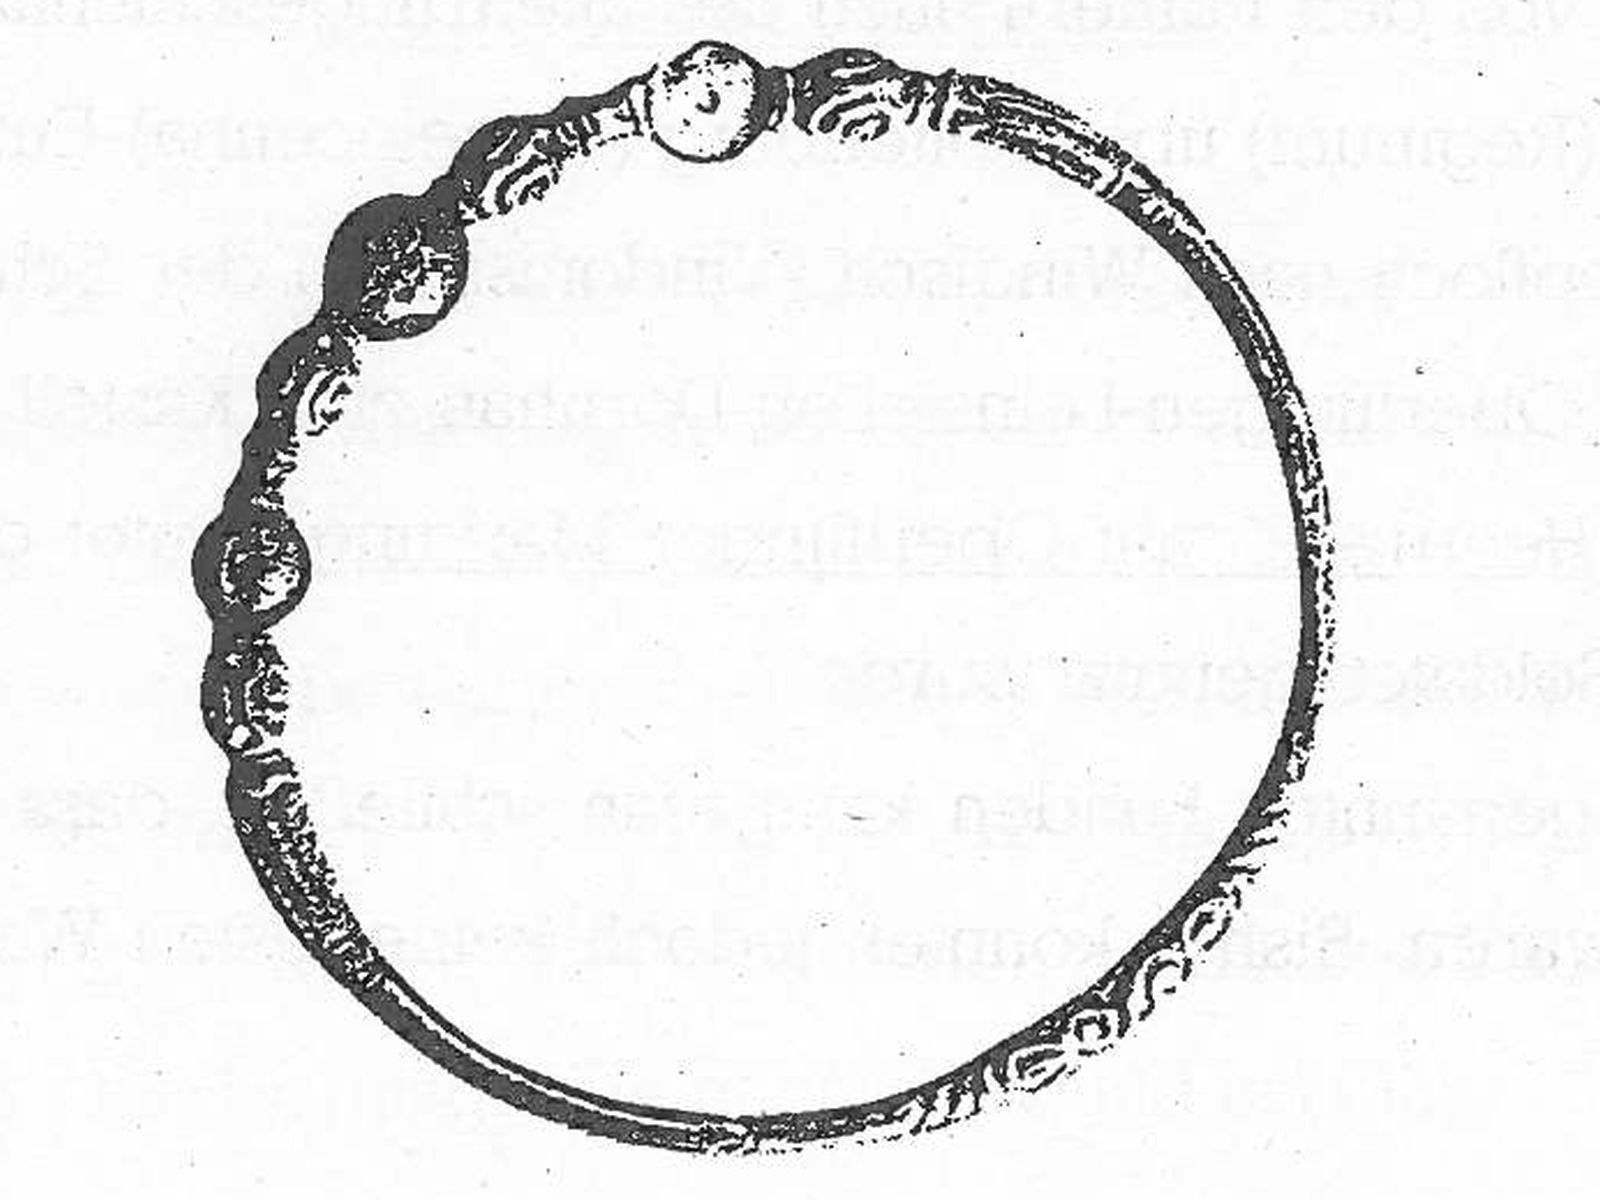  Keltischer Halsring - Bild wird mit einem klick vergrößert 